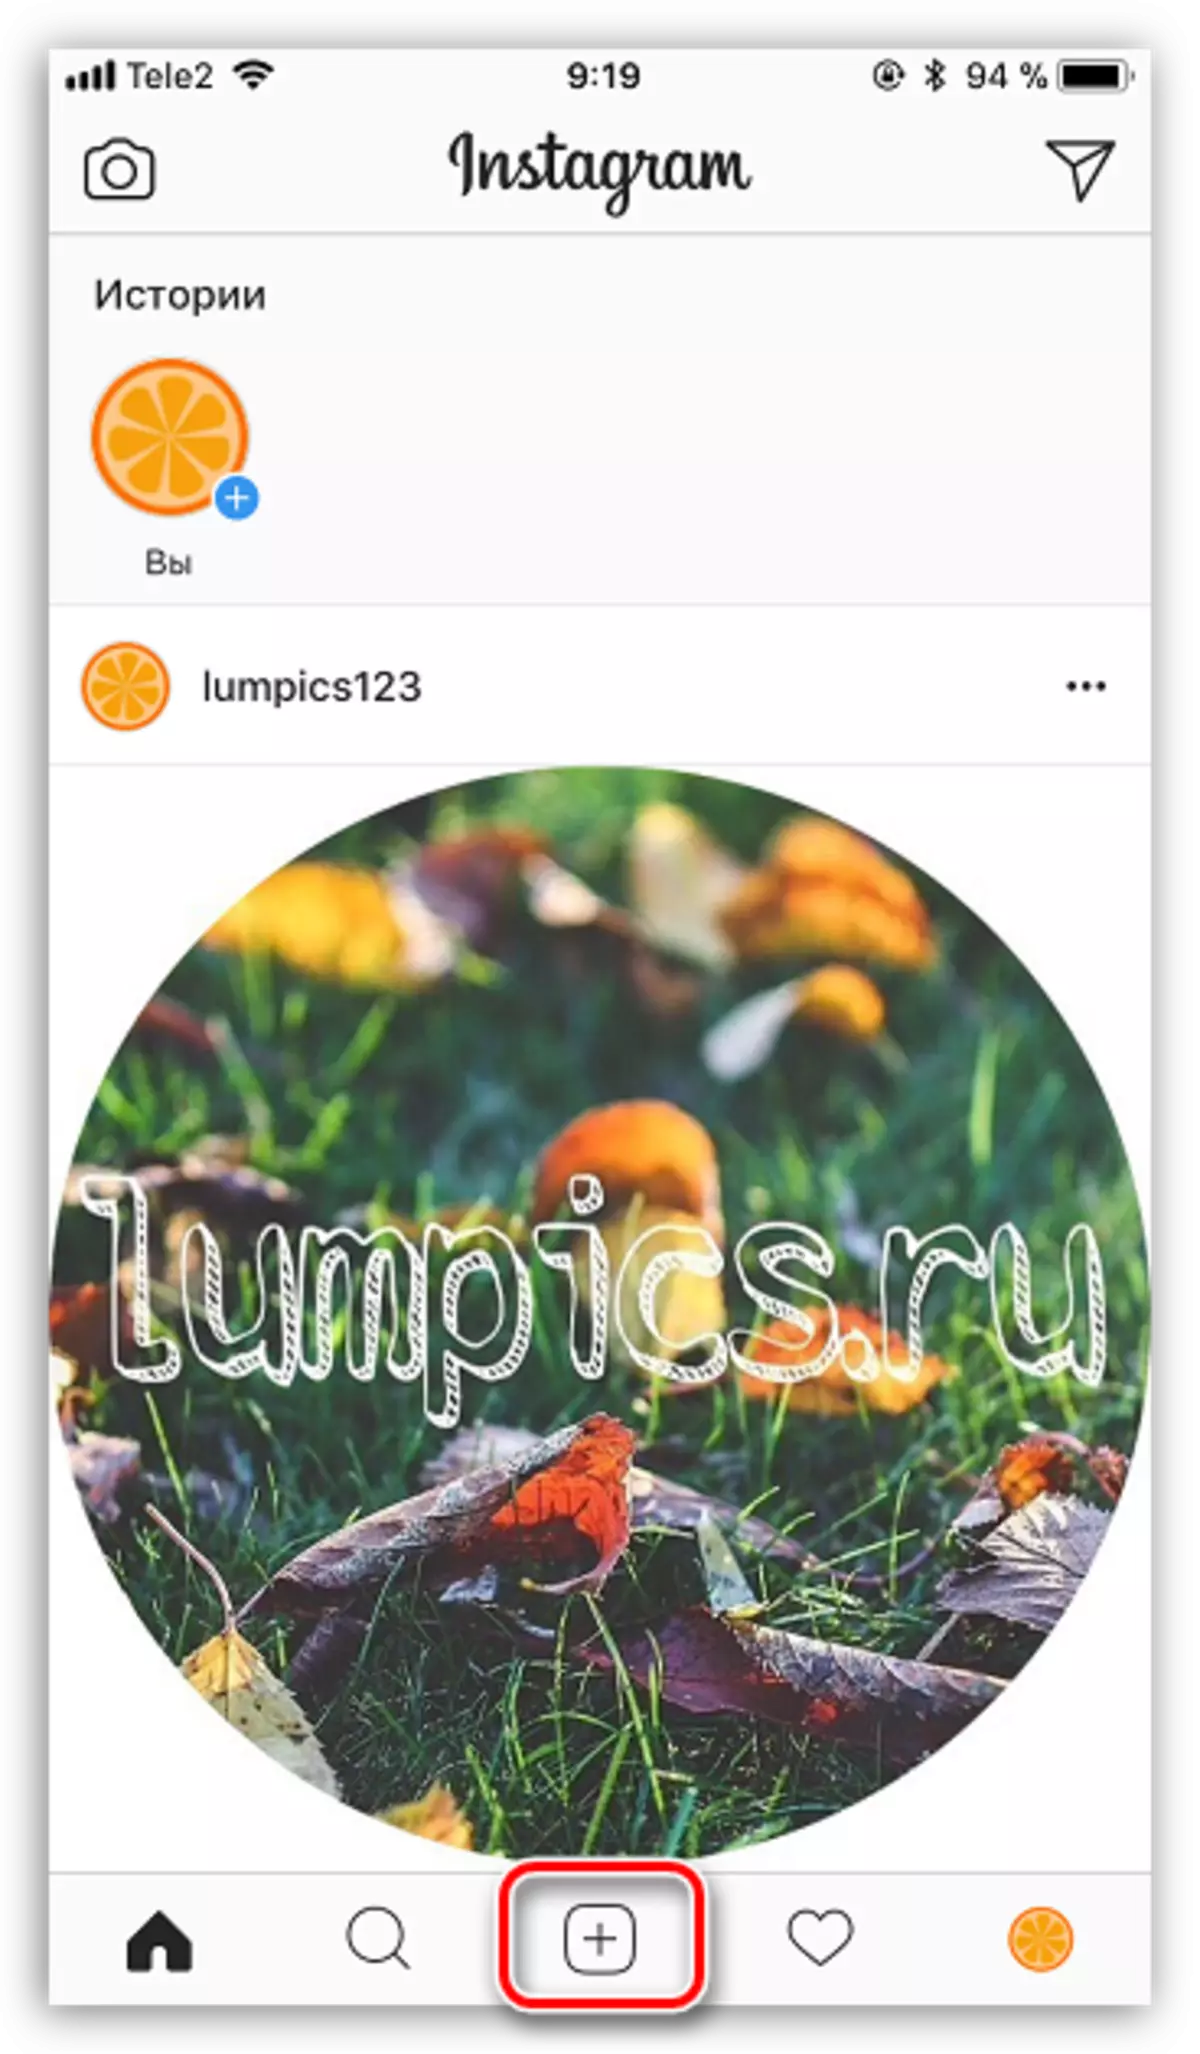 Tombol menu pusat ing lampiran Instagram